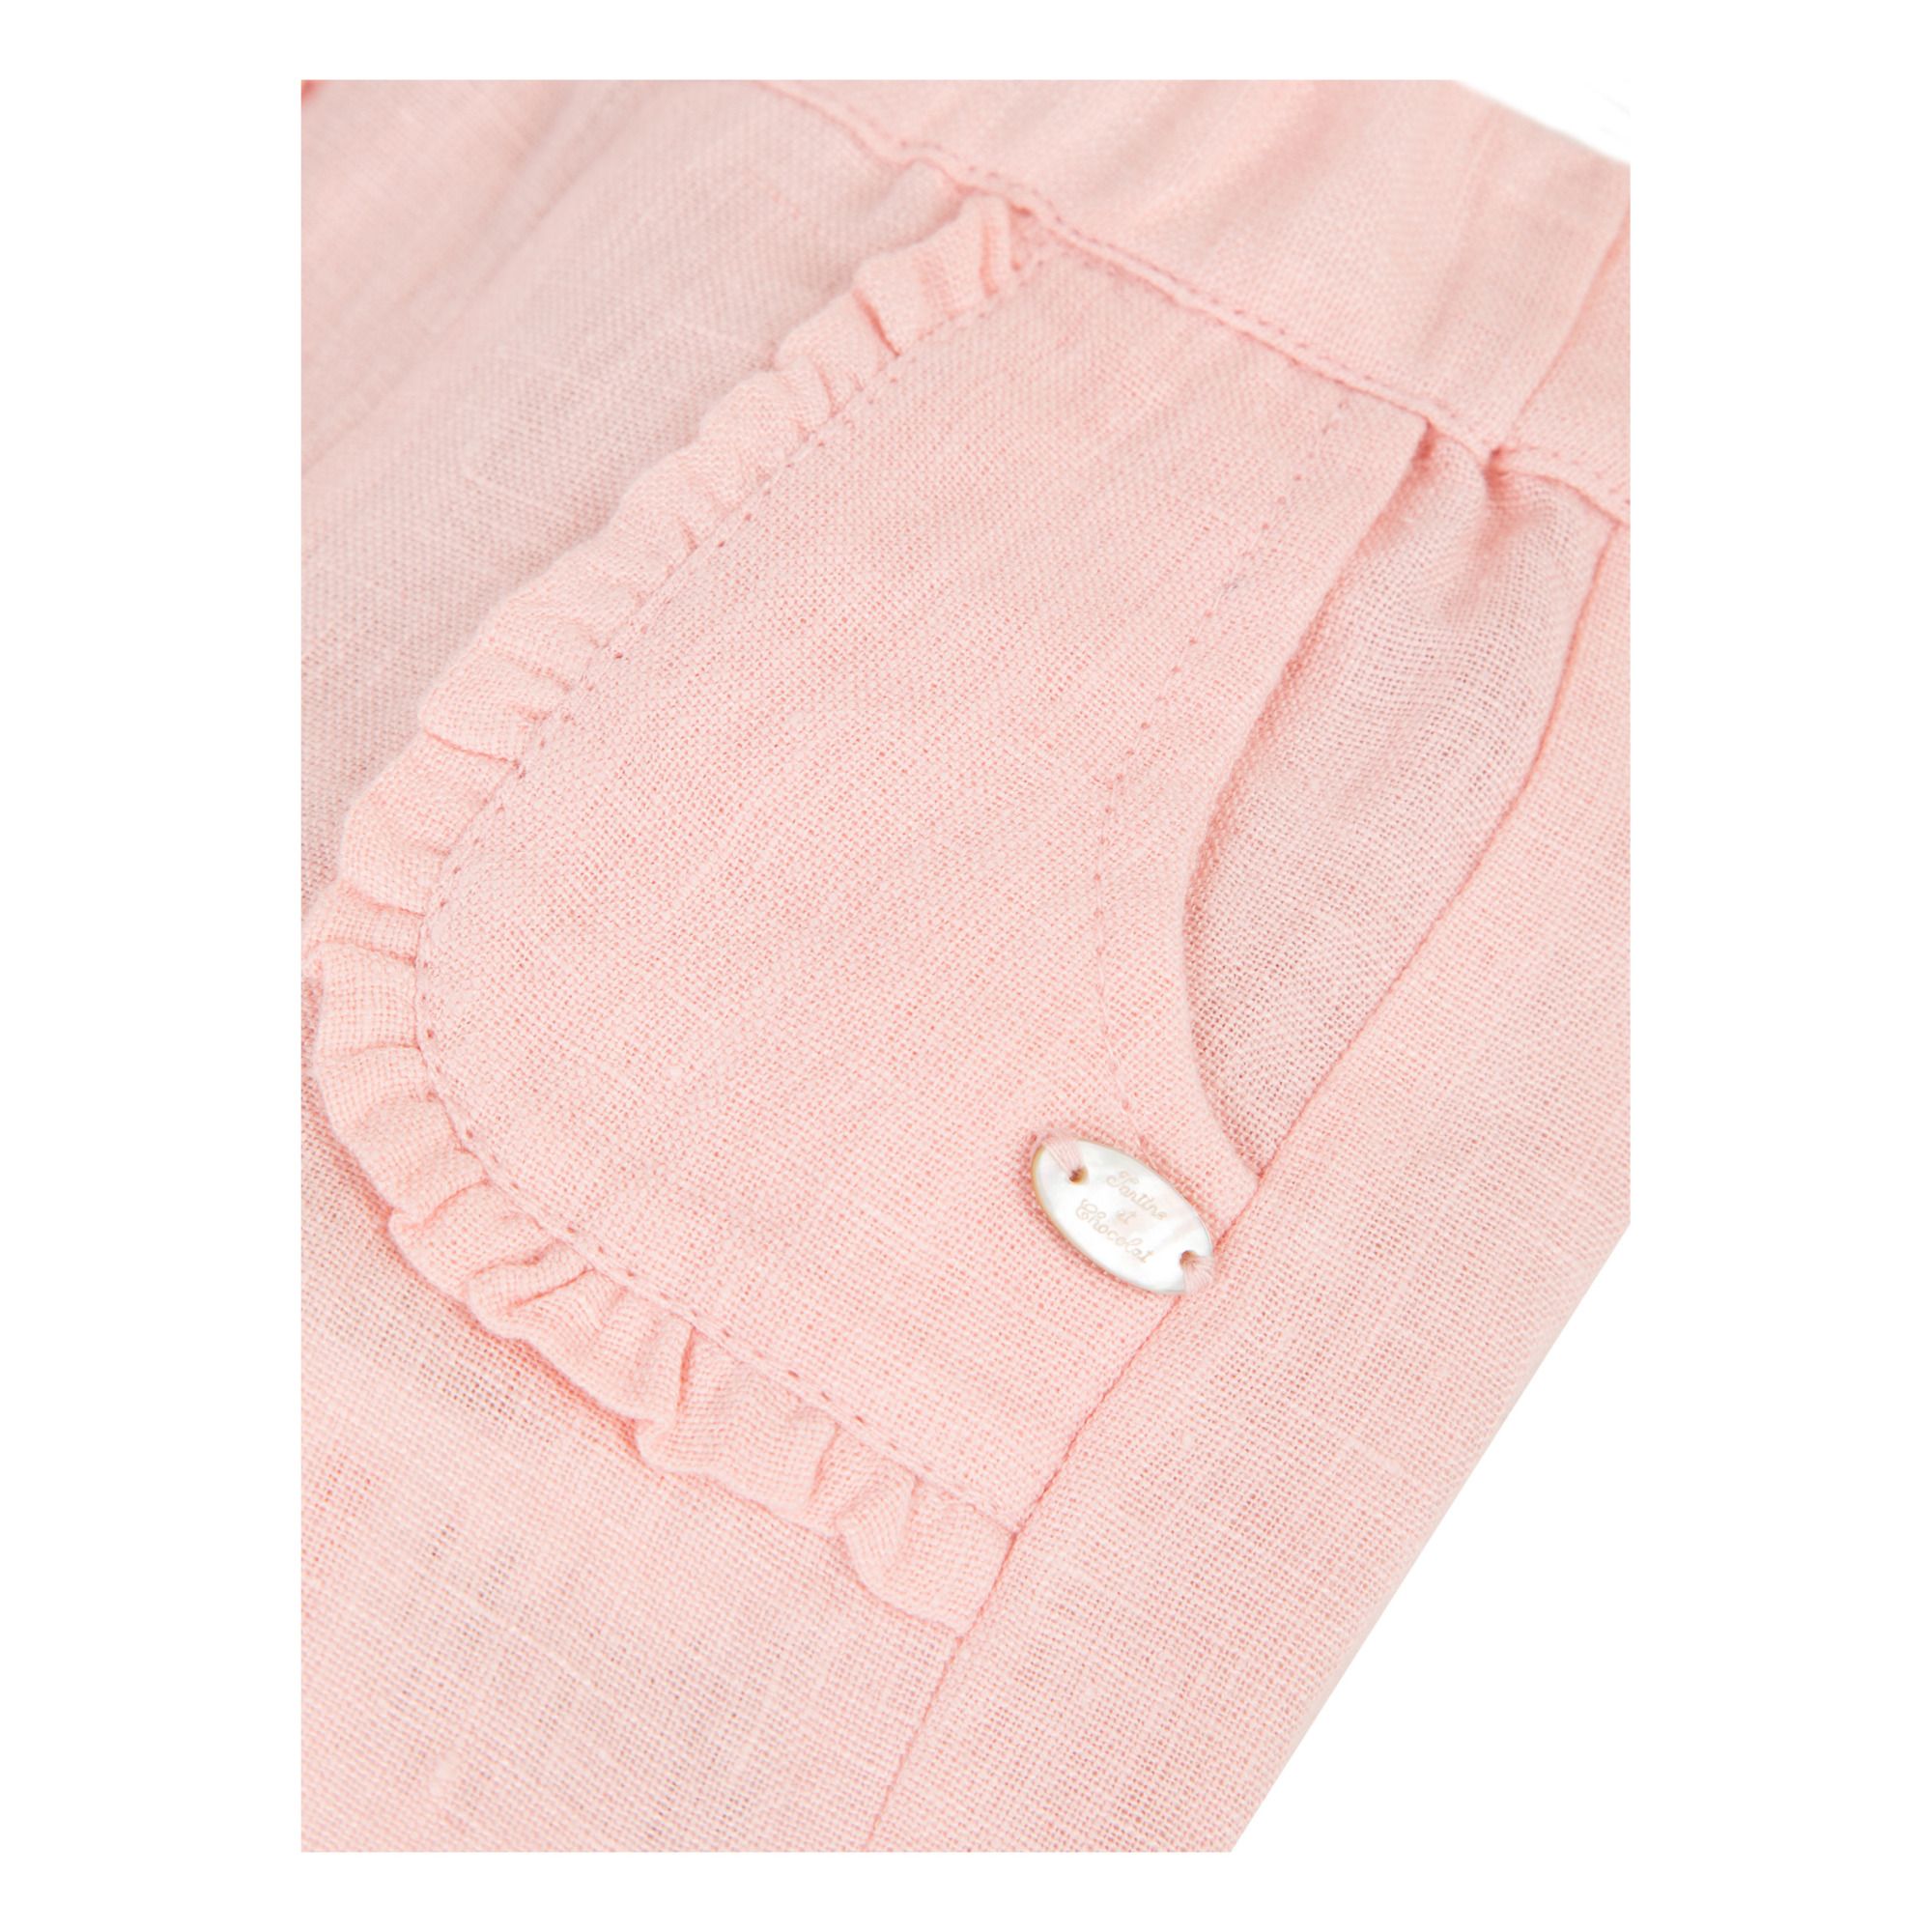 Pantalón de lino Rosa- Imagen del producto n°1